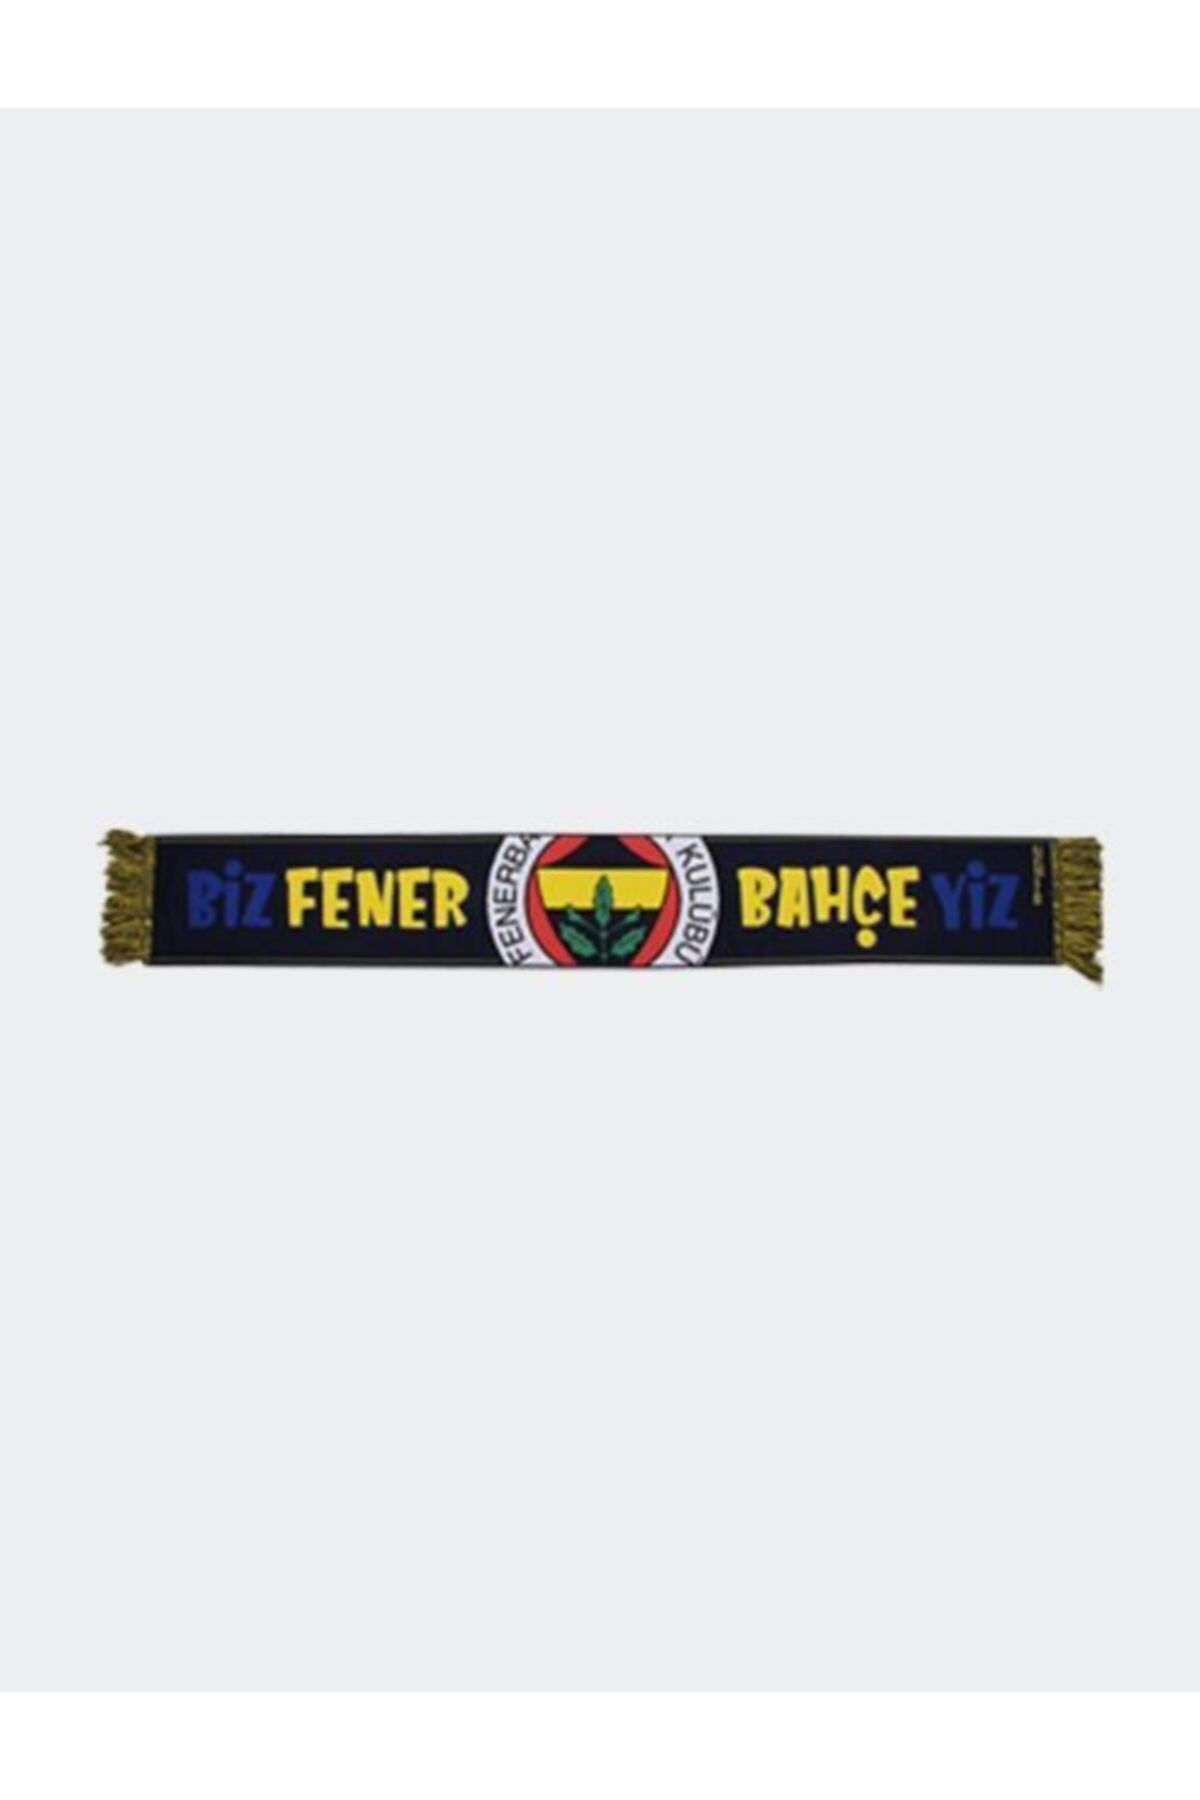 Fenerbahçe Biz Fenerbahçeyiz Dokuma Atkı